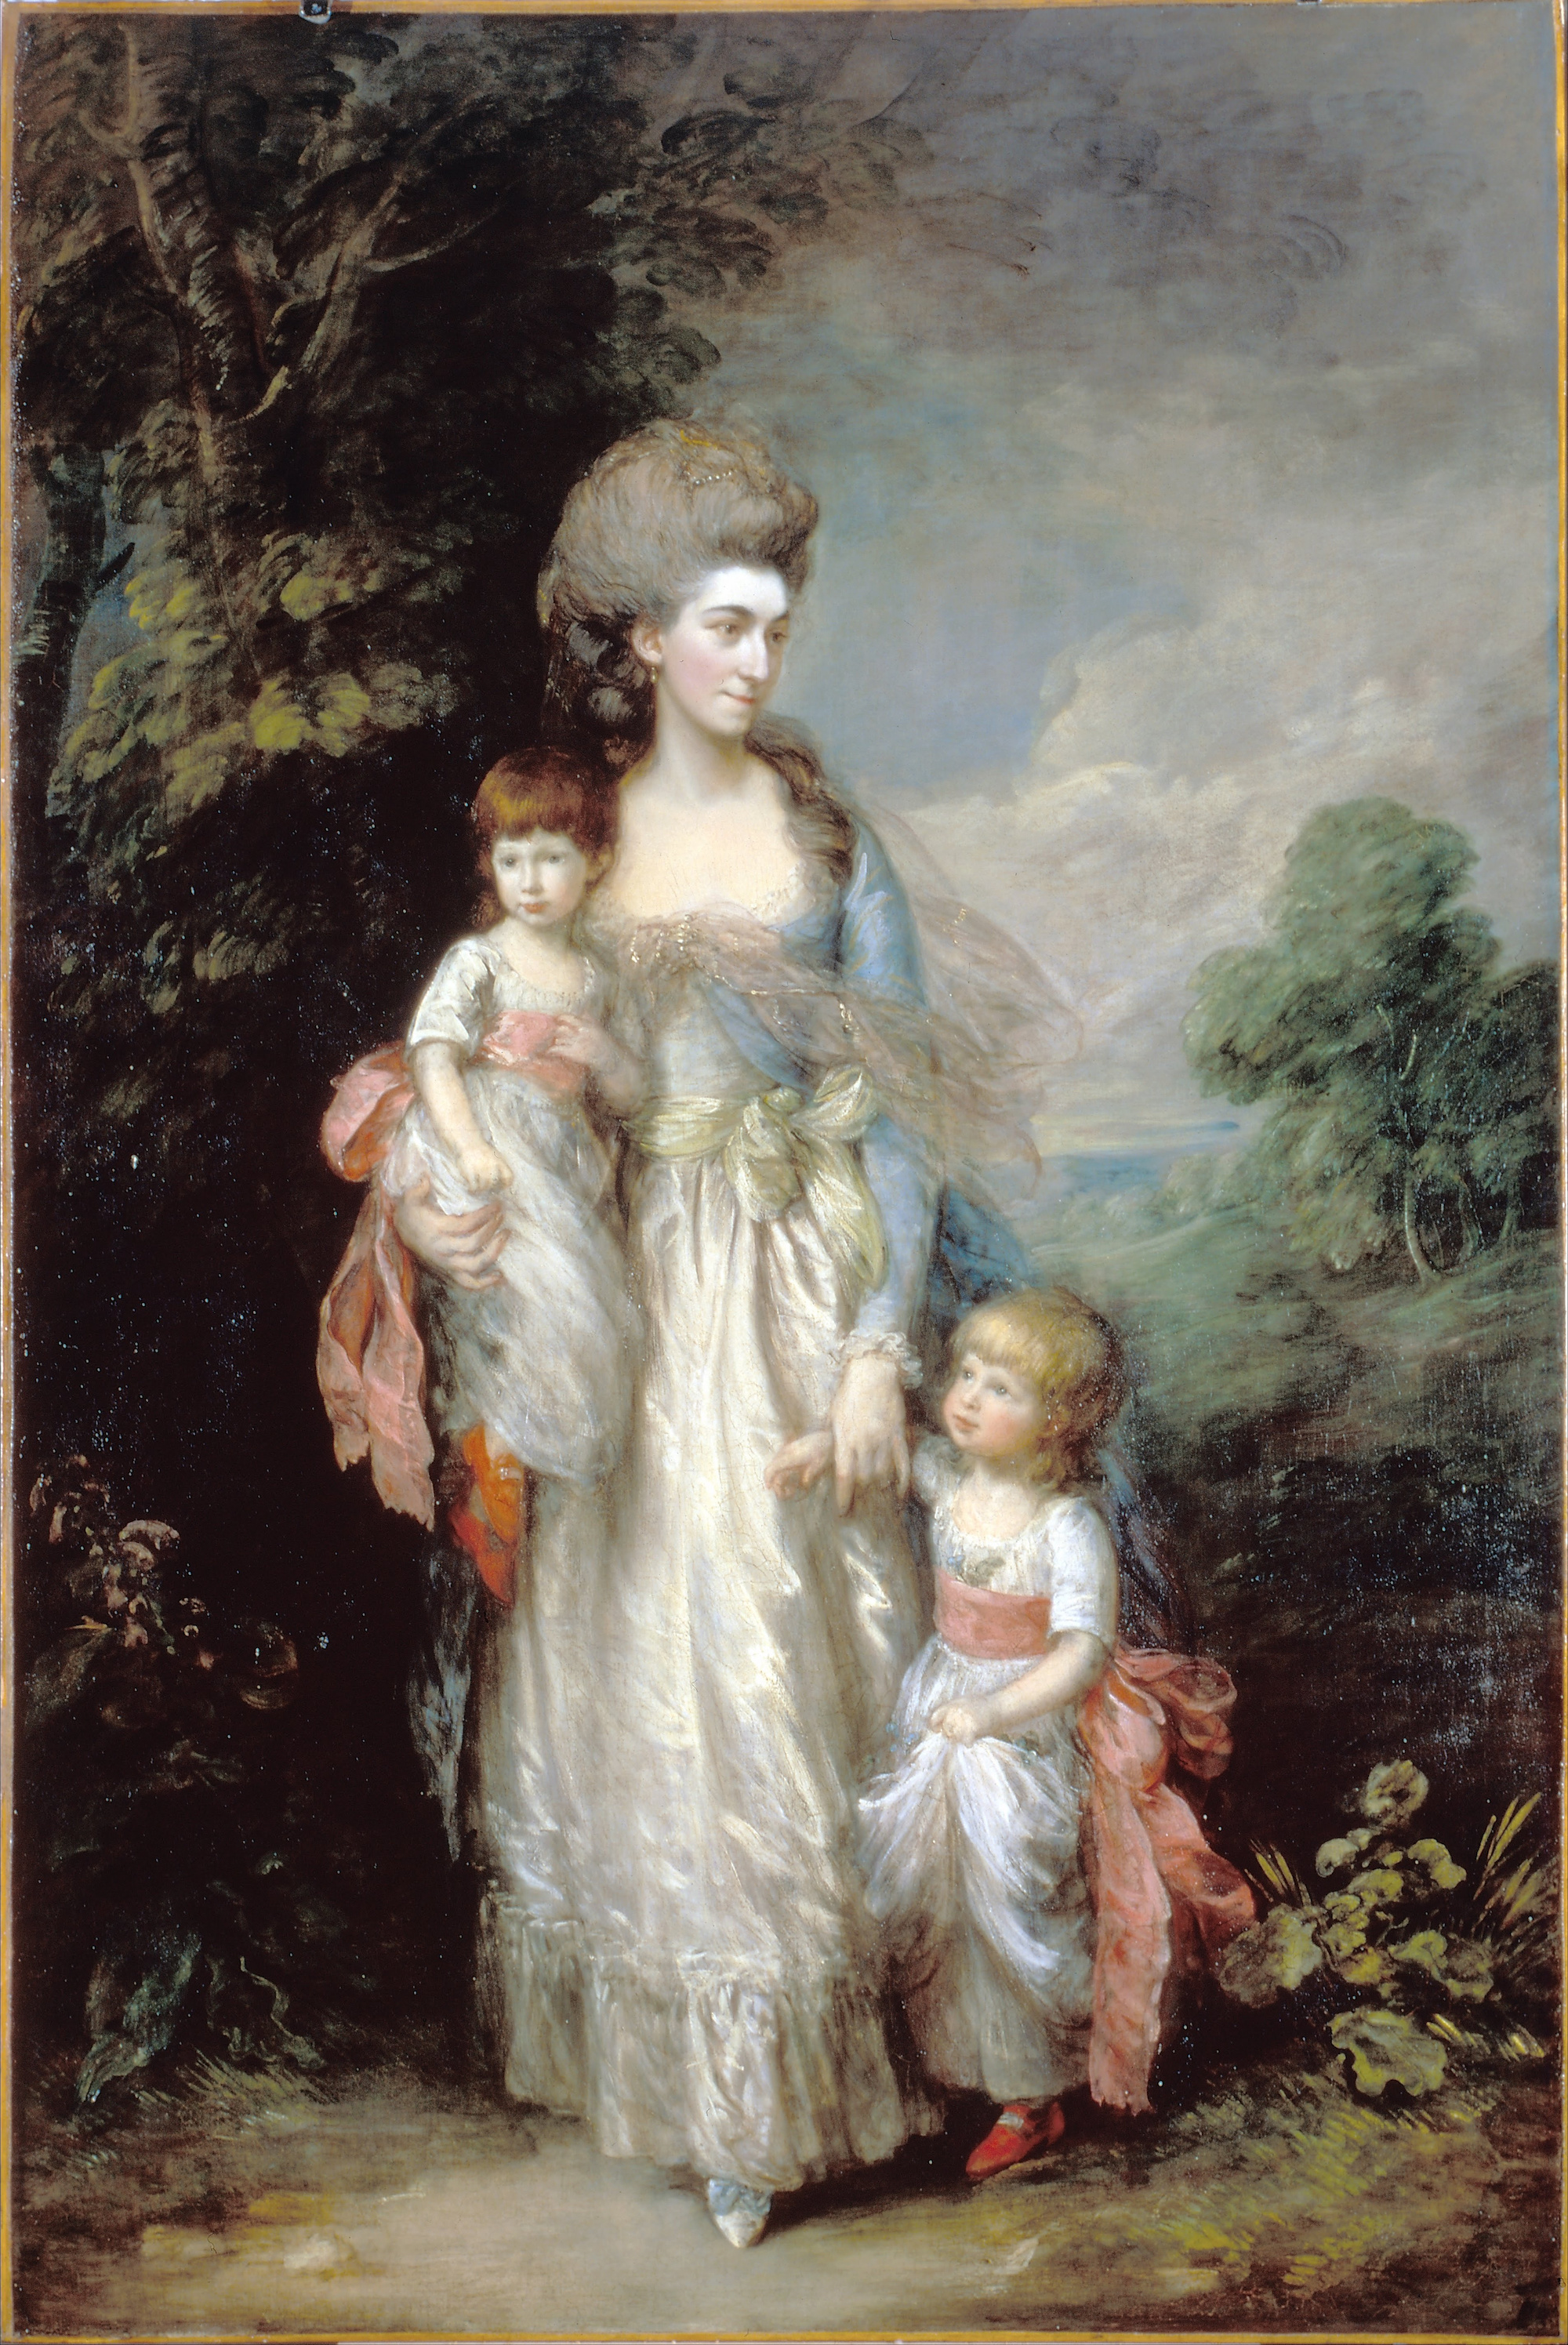 伊丽莎白 穆蒂夫人和她的两个儿子塞缪尔与托马斯 by 托马斯 庚斯博罗 - c.1779-85 - 154.2 x 234 cm 达利奇美术馆